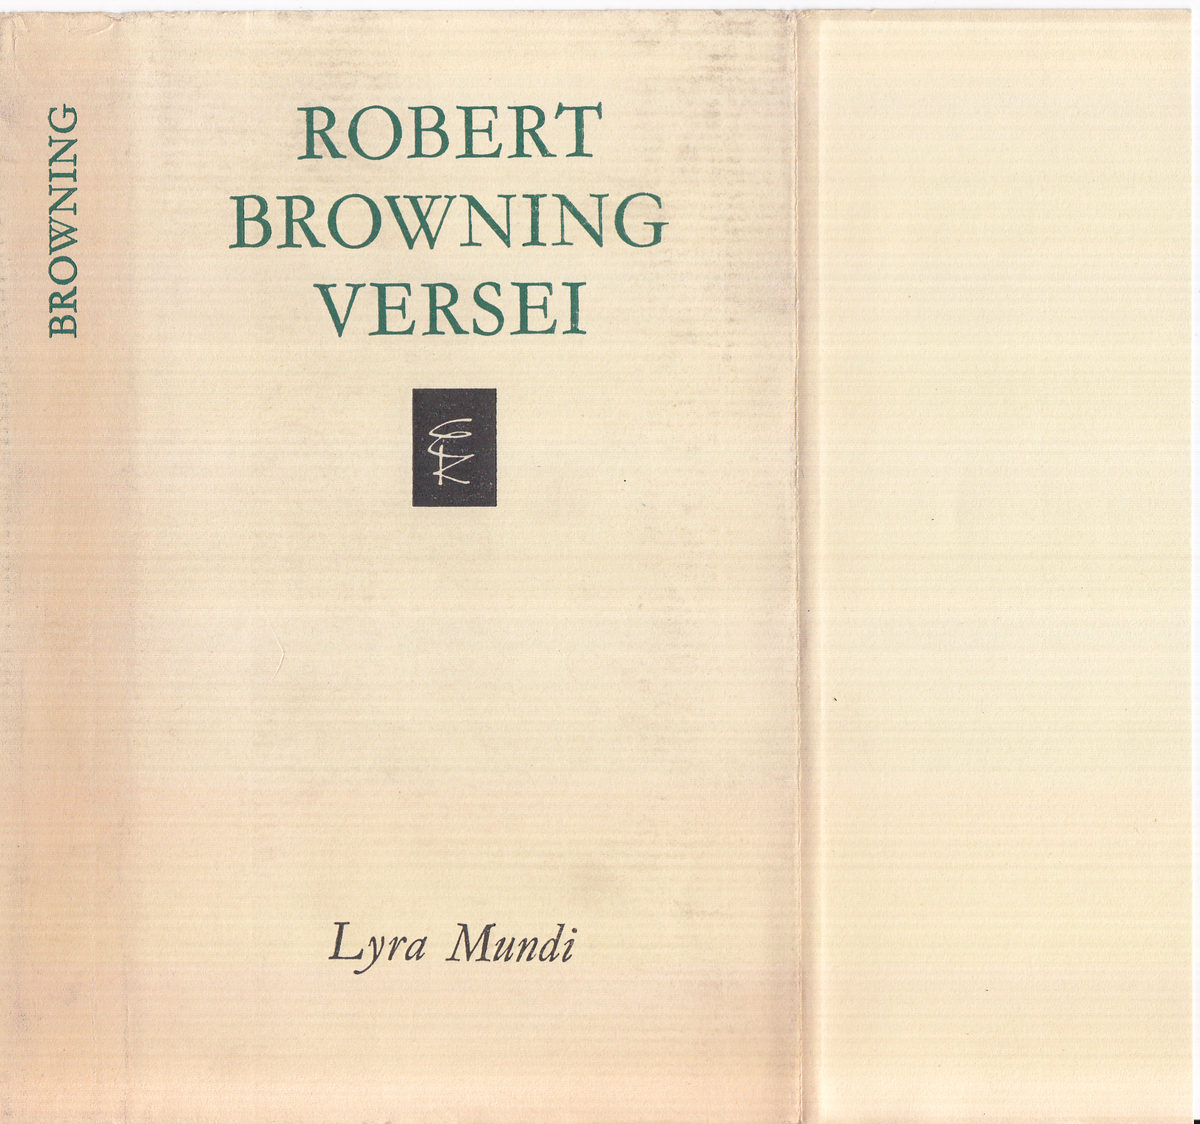 Browning, Robert: Robert Browning versei | PIM Gyűjtemények